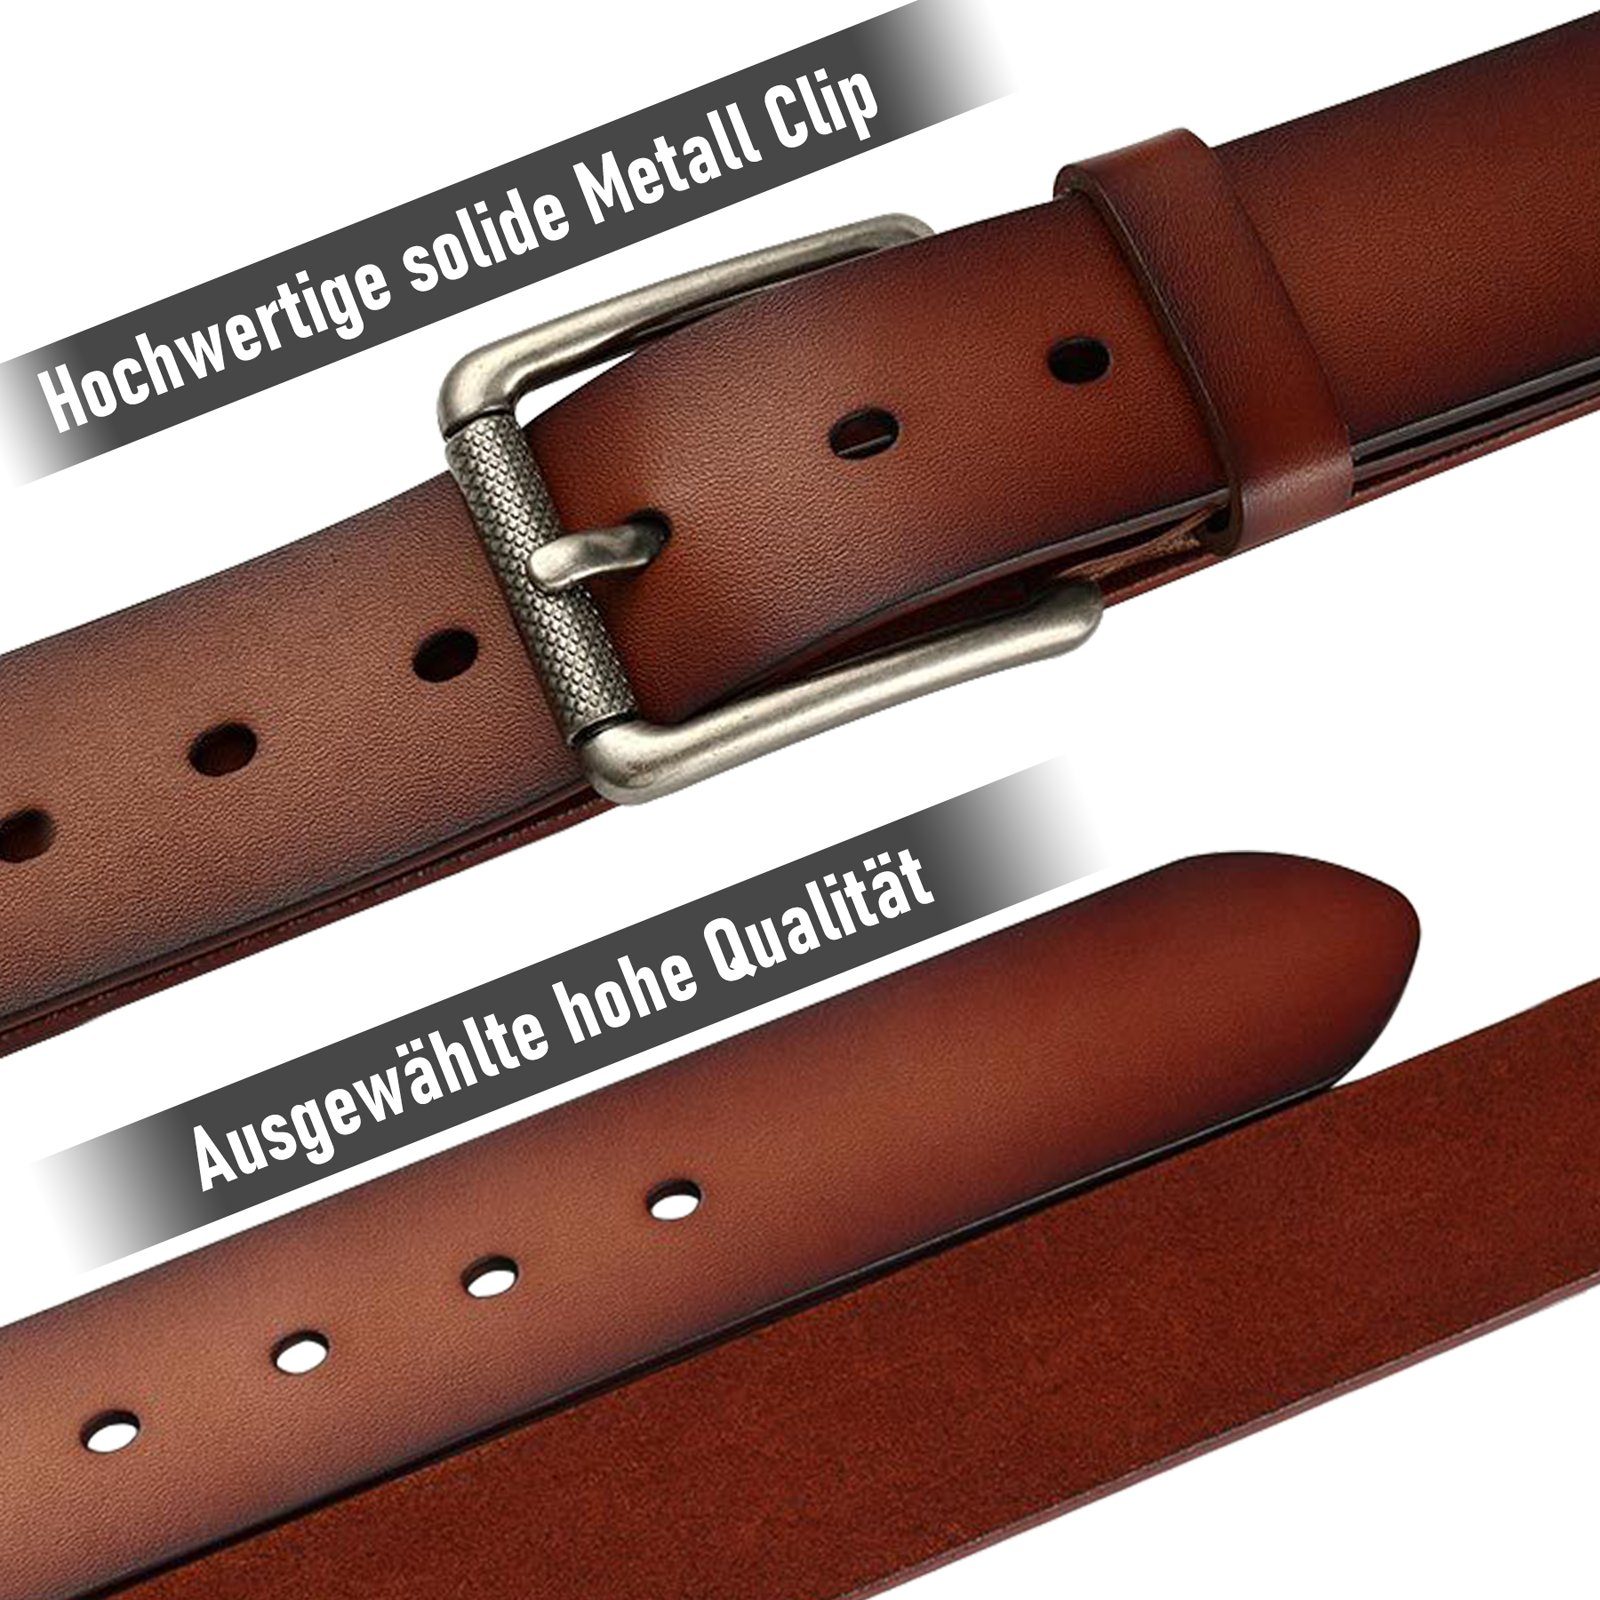 Rot/Braun Leder Dornschließe hochwertigem, Aus Ledergürtel Business Gürtel gefertigt Herren Ledergürtel TAN.TOMI Accessoires echten